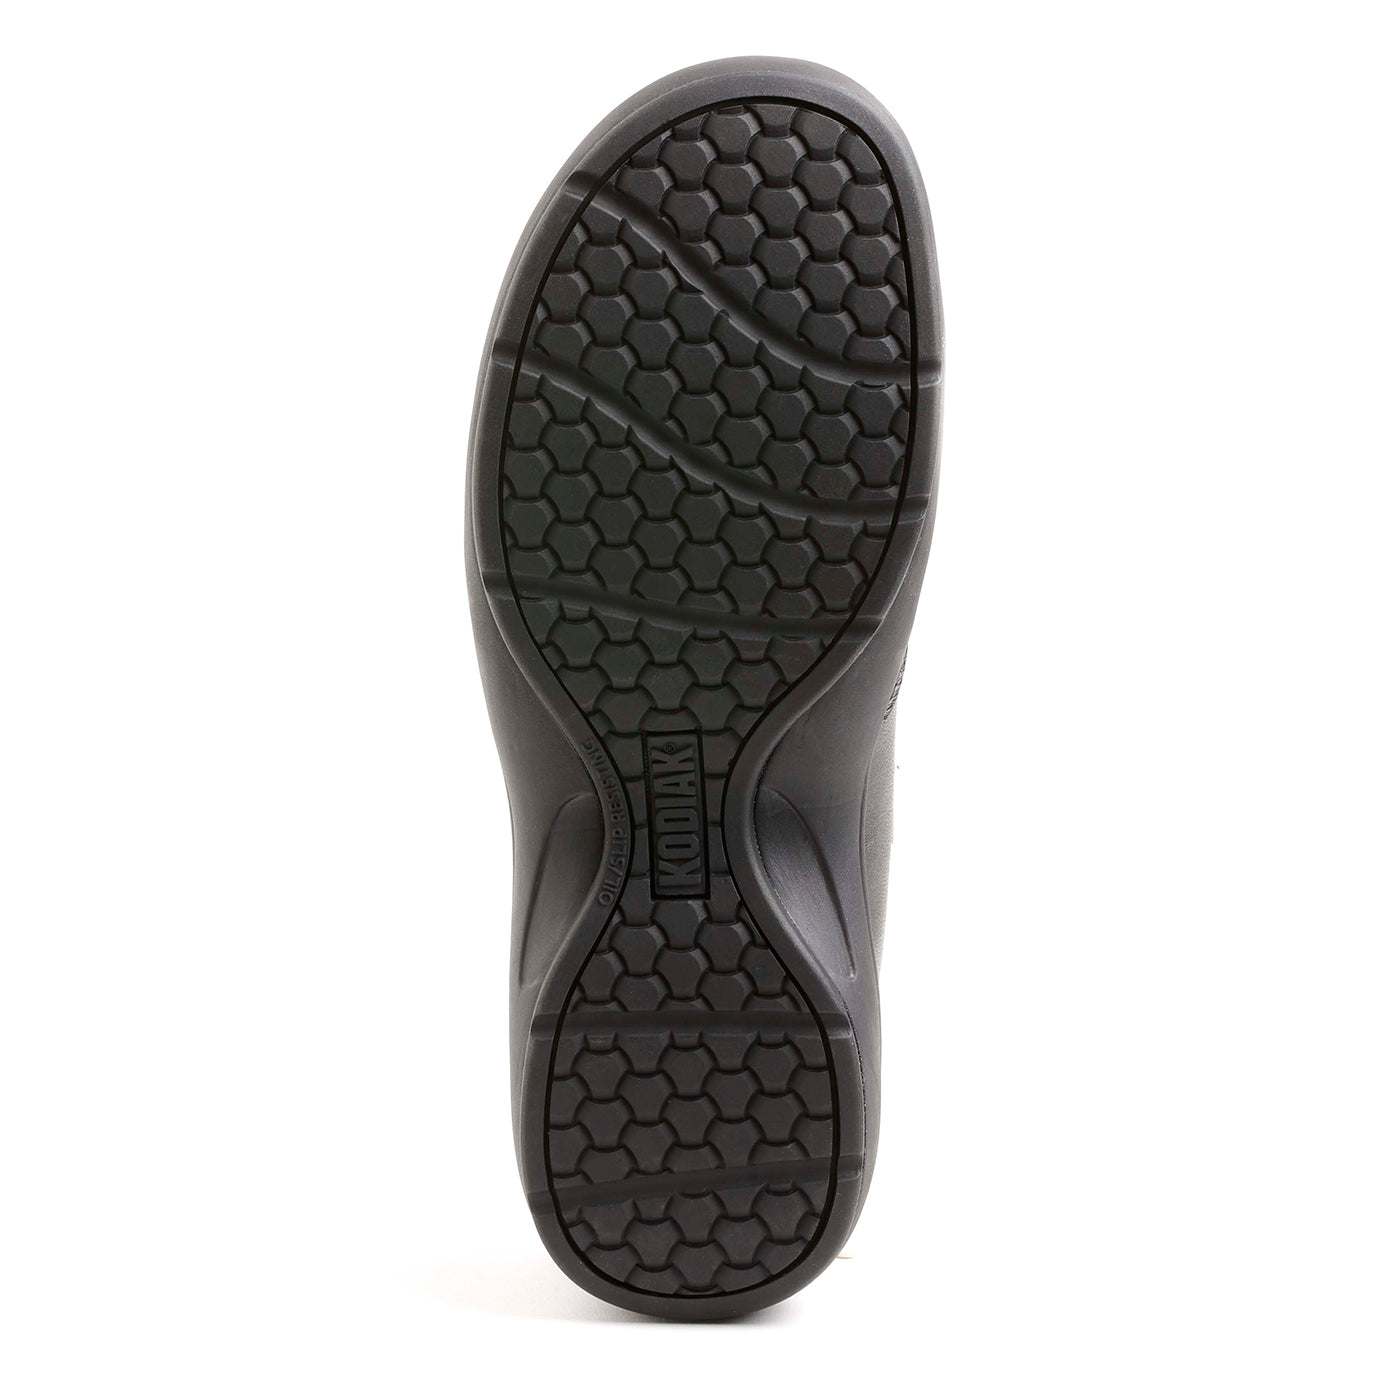 Kodiak Taja Steel Toe Flex Women's Safety Shoes | Black | Sizes 5 - 10 Work Boots - Cleanflow